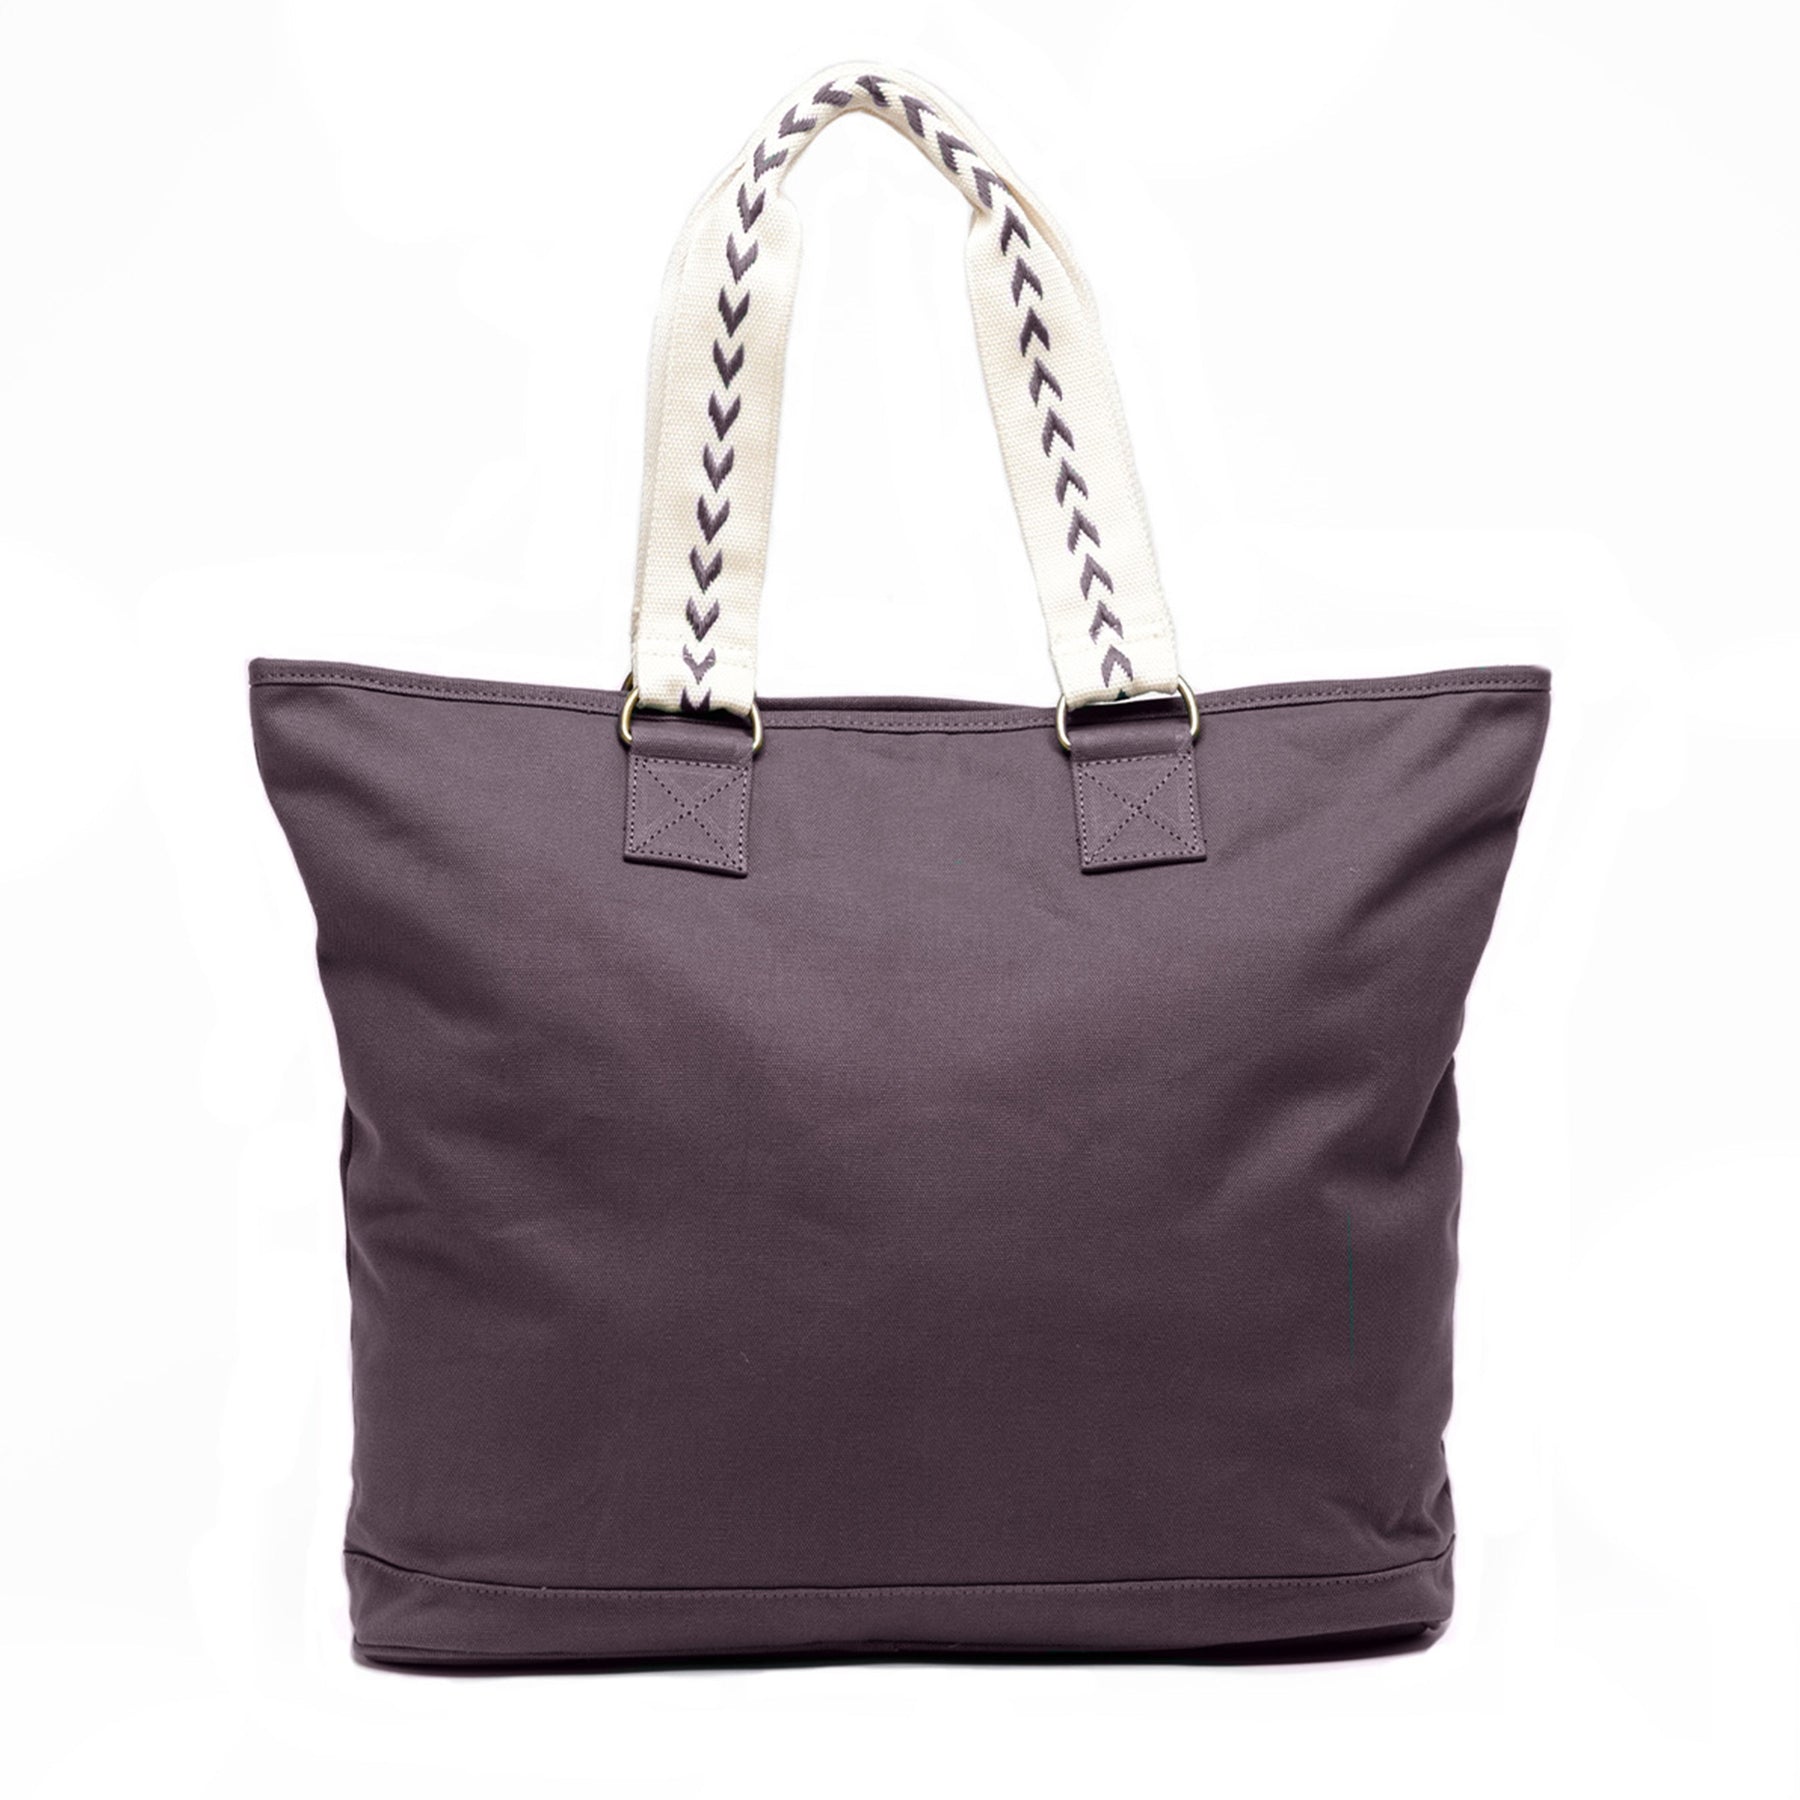 Multipurpose Beach Tote Bag Shoulder Bag with Inner Zipper